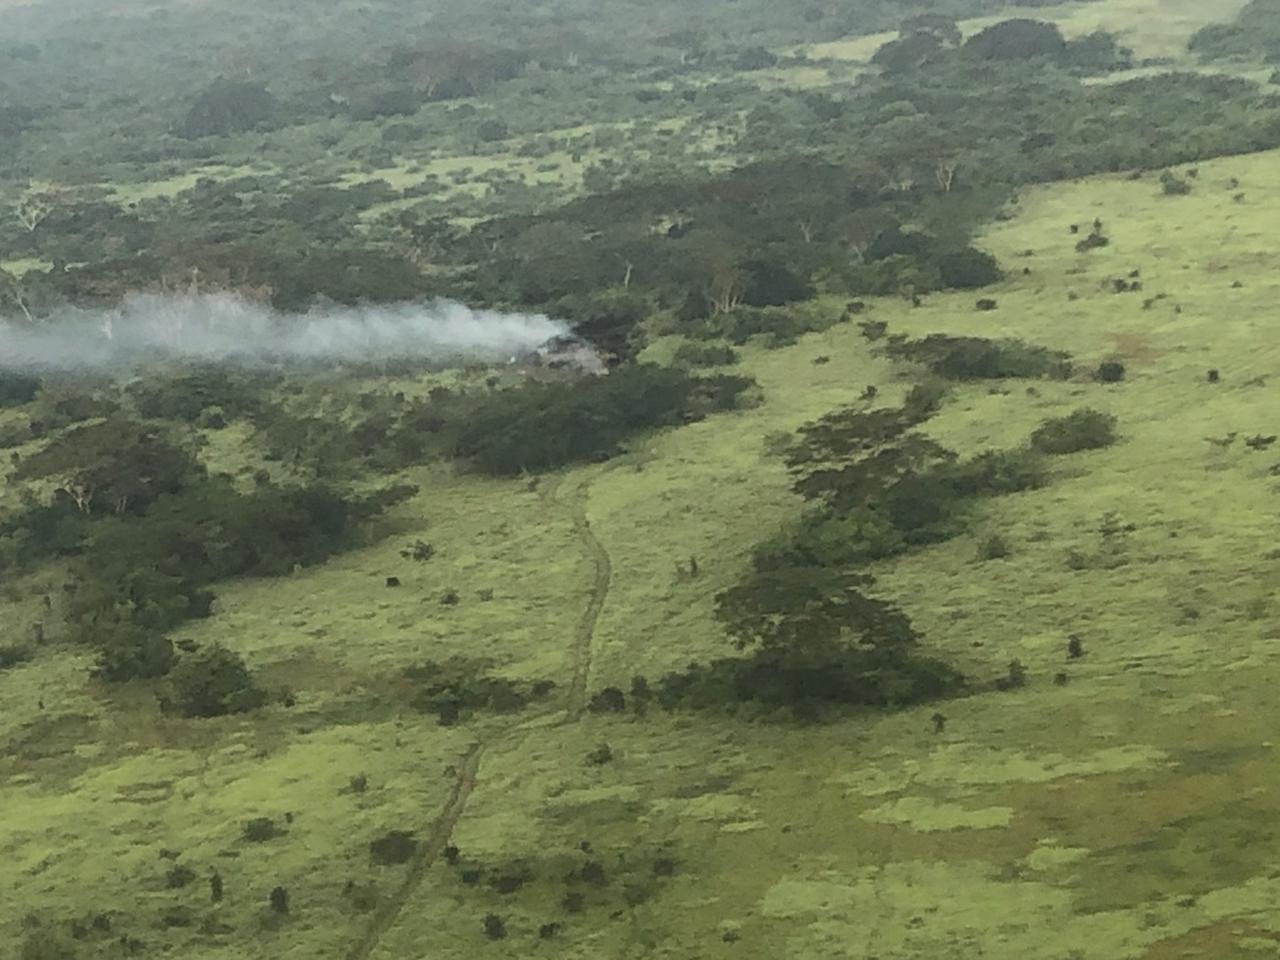 Avioneta se estrelló en una finca en Champerico, Retalhuleu. (Foto Prensa Libre: Ejército de Guatemala)